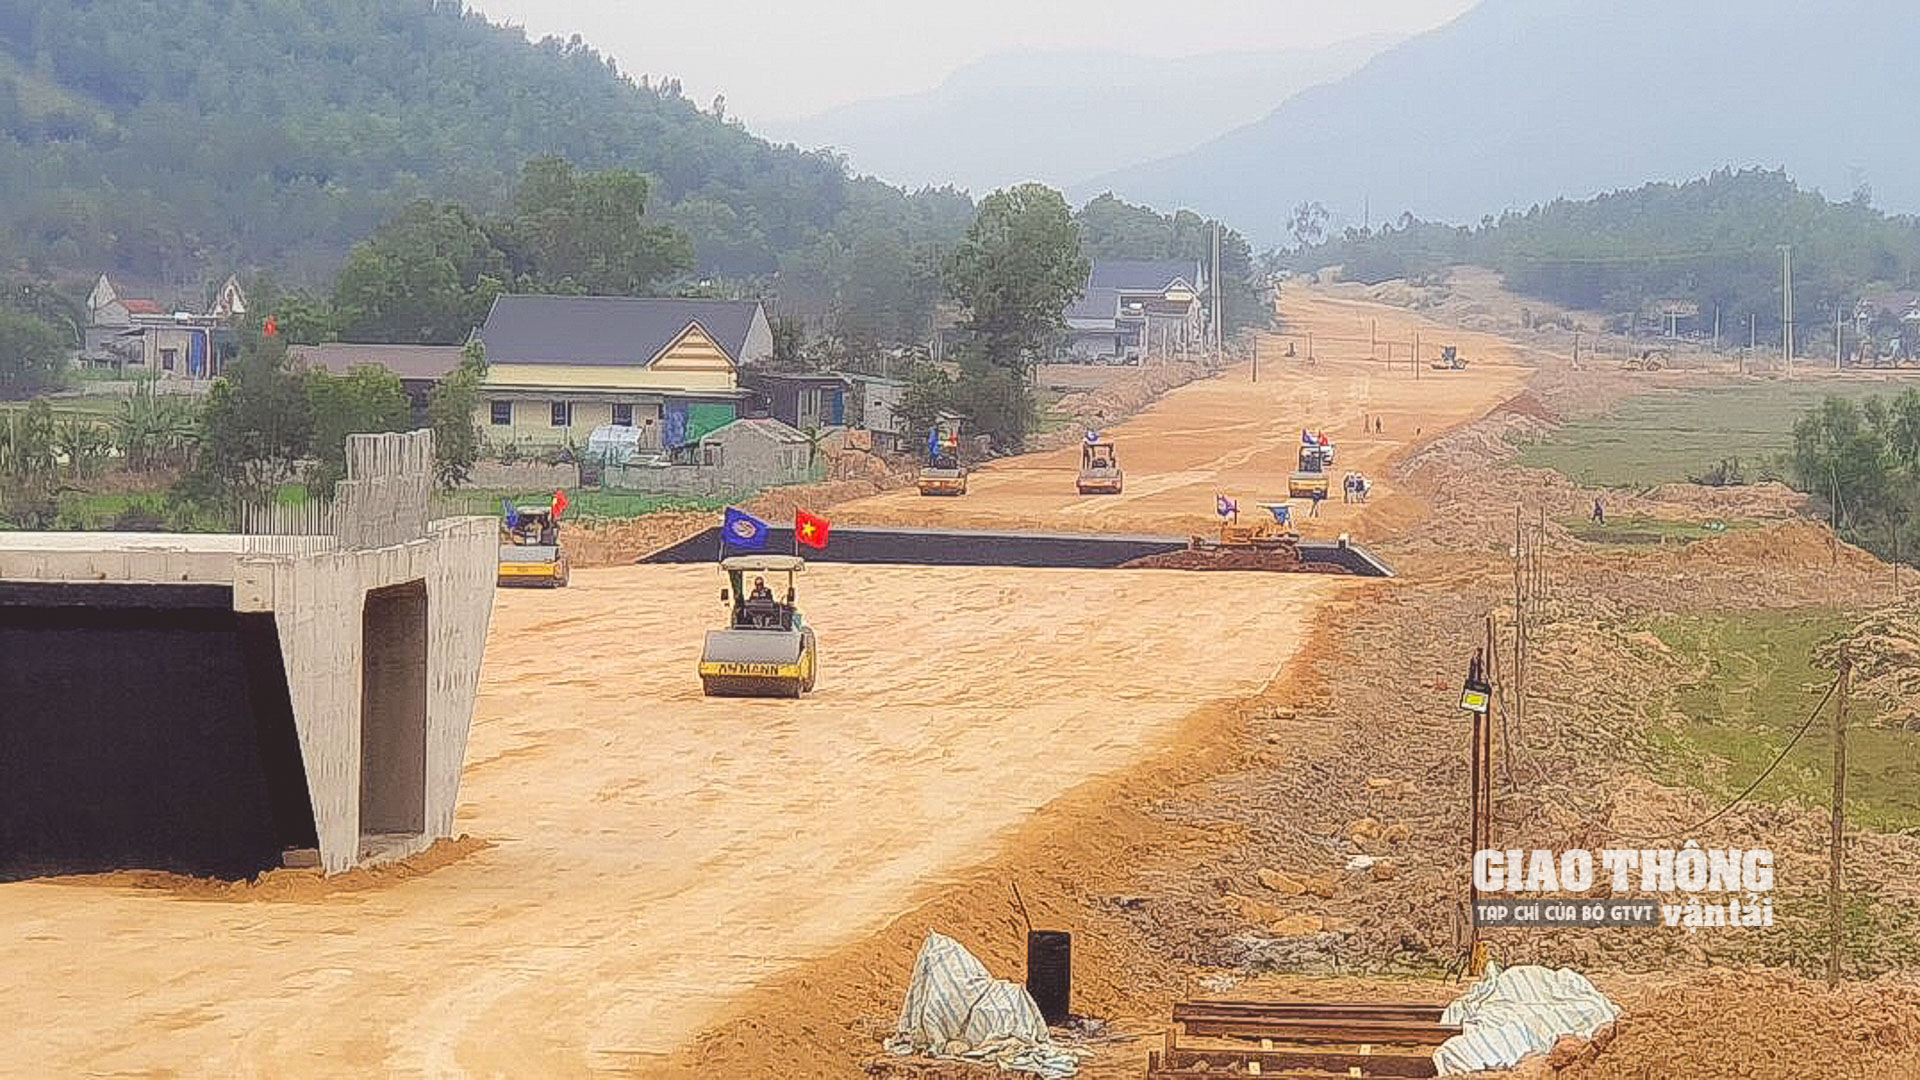 Cao tốc QL45 - Nghi Sơn dài 43,28km đi qua tỉnh Thanh Hóa thuộc cao tốc Bắc - Nam giai đoạn 2017-2020. Đoạn QL45 - Nghi Sơn có tổng mức đầu tư 5.534,472 tỷ đồng, sử dụng vốn ngân sách Nhà nước, khởi công từ tháng 7/2021, dự kiến thông nền đường toàn tuyến vào cuối năm 2022, hoàn thành vào tháng 8/2023